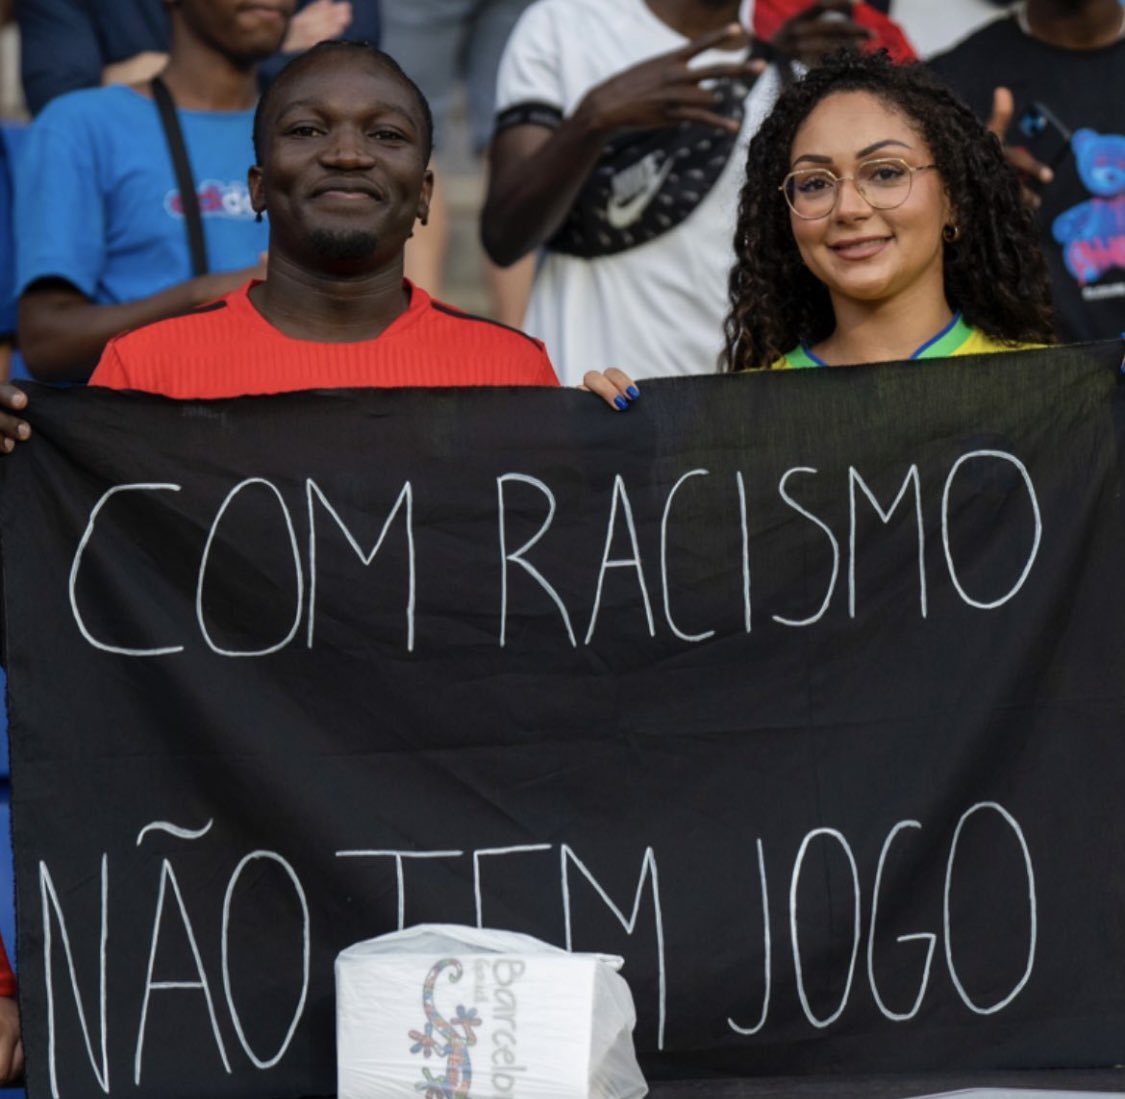 Seleção brasileira vai jogar com uniforme preto na Espanha em protesto  contra o racismo - Rádio Agreste FM